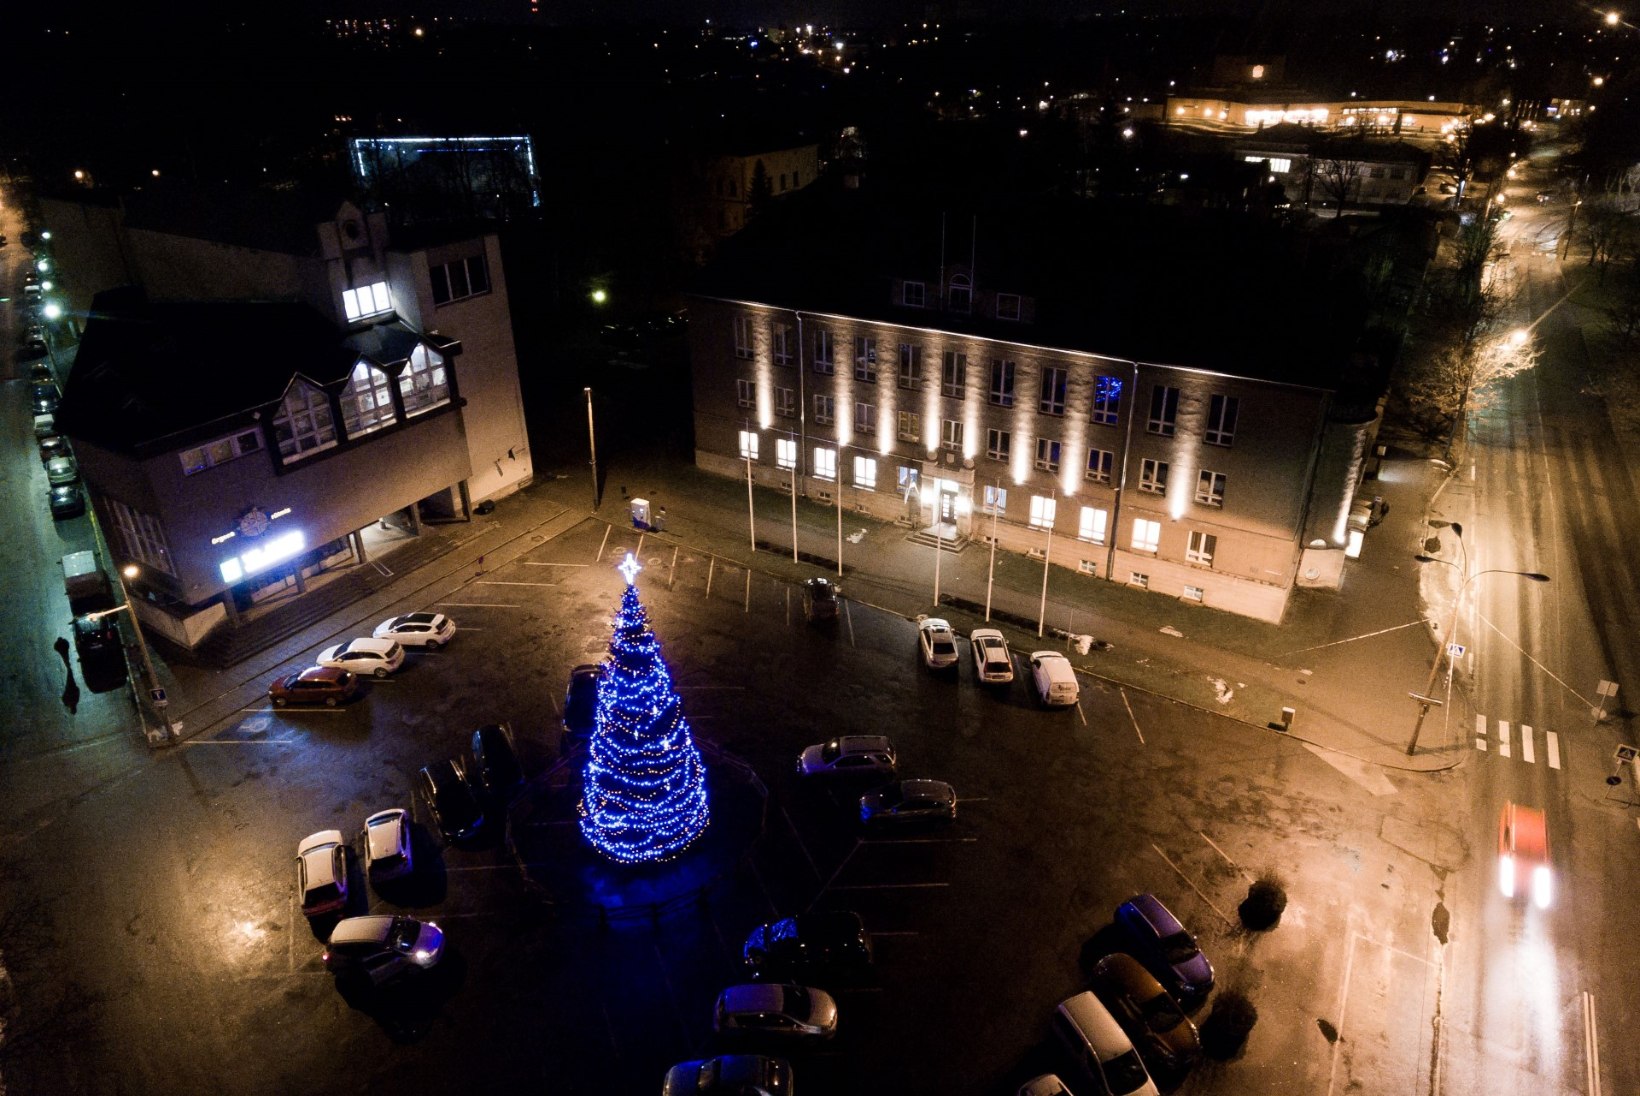 FOTOD | Viljandi jõulupuu läheb linnale maksma 5146 eurot